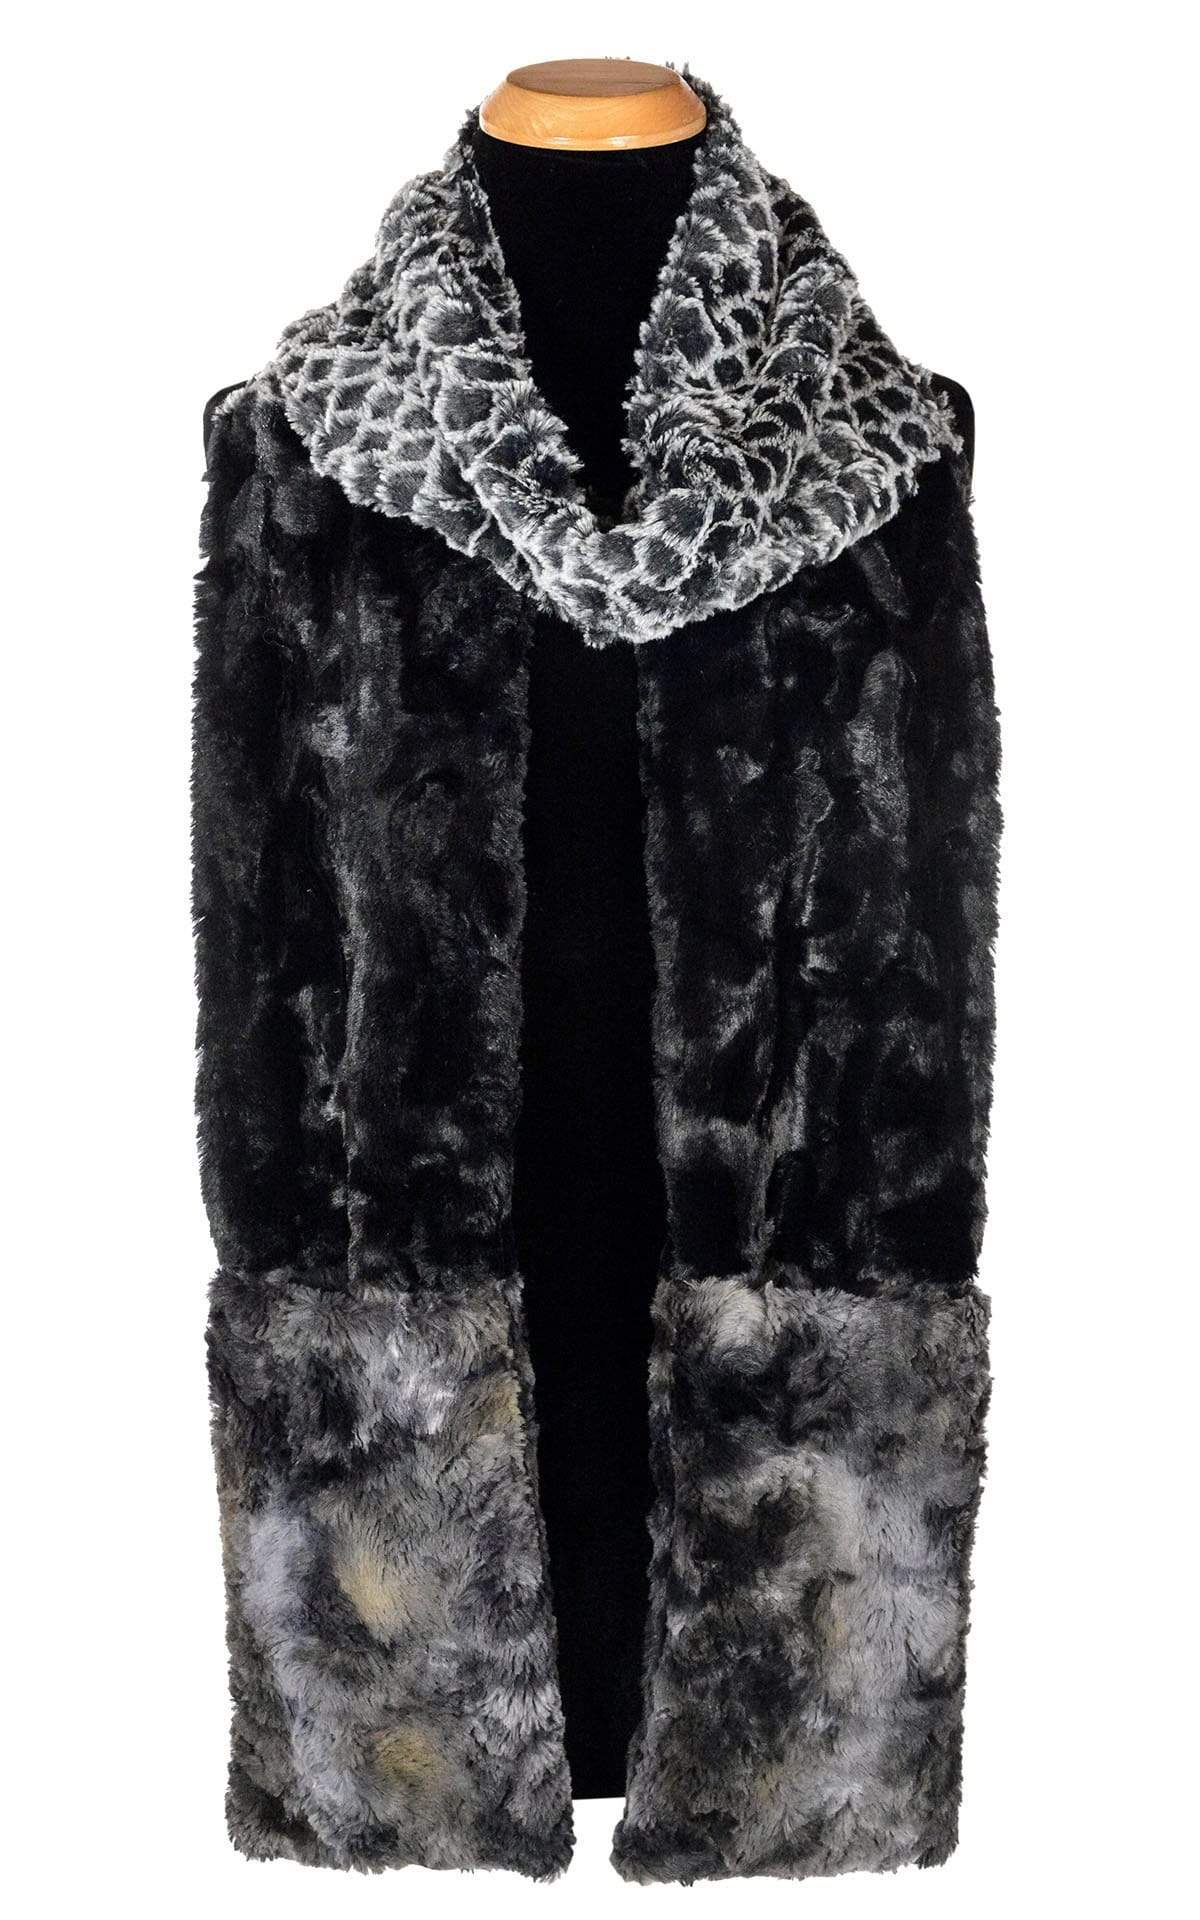 Tri-Color Scarf - Luxury Faux Fur in Snow Owl / Cuddly Black / Skye